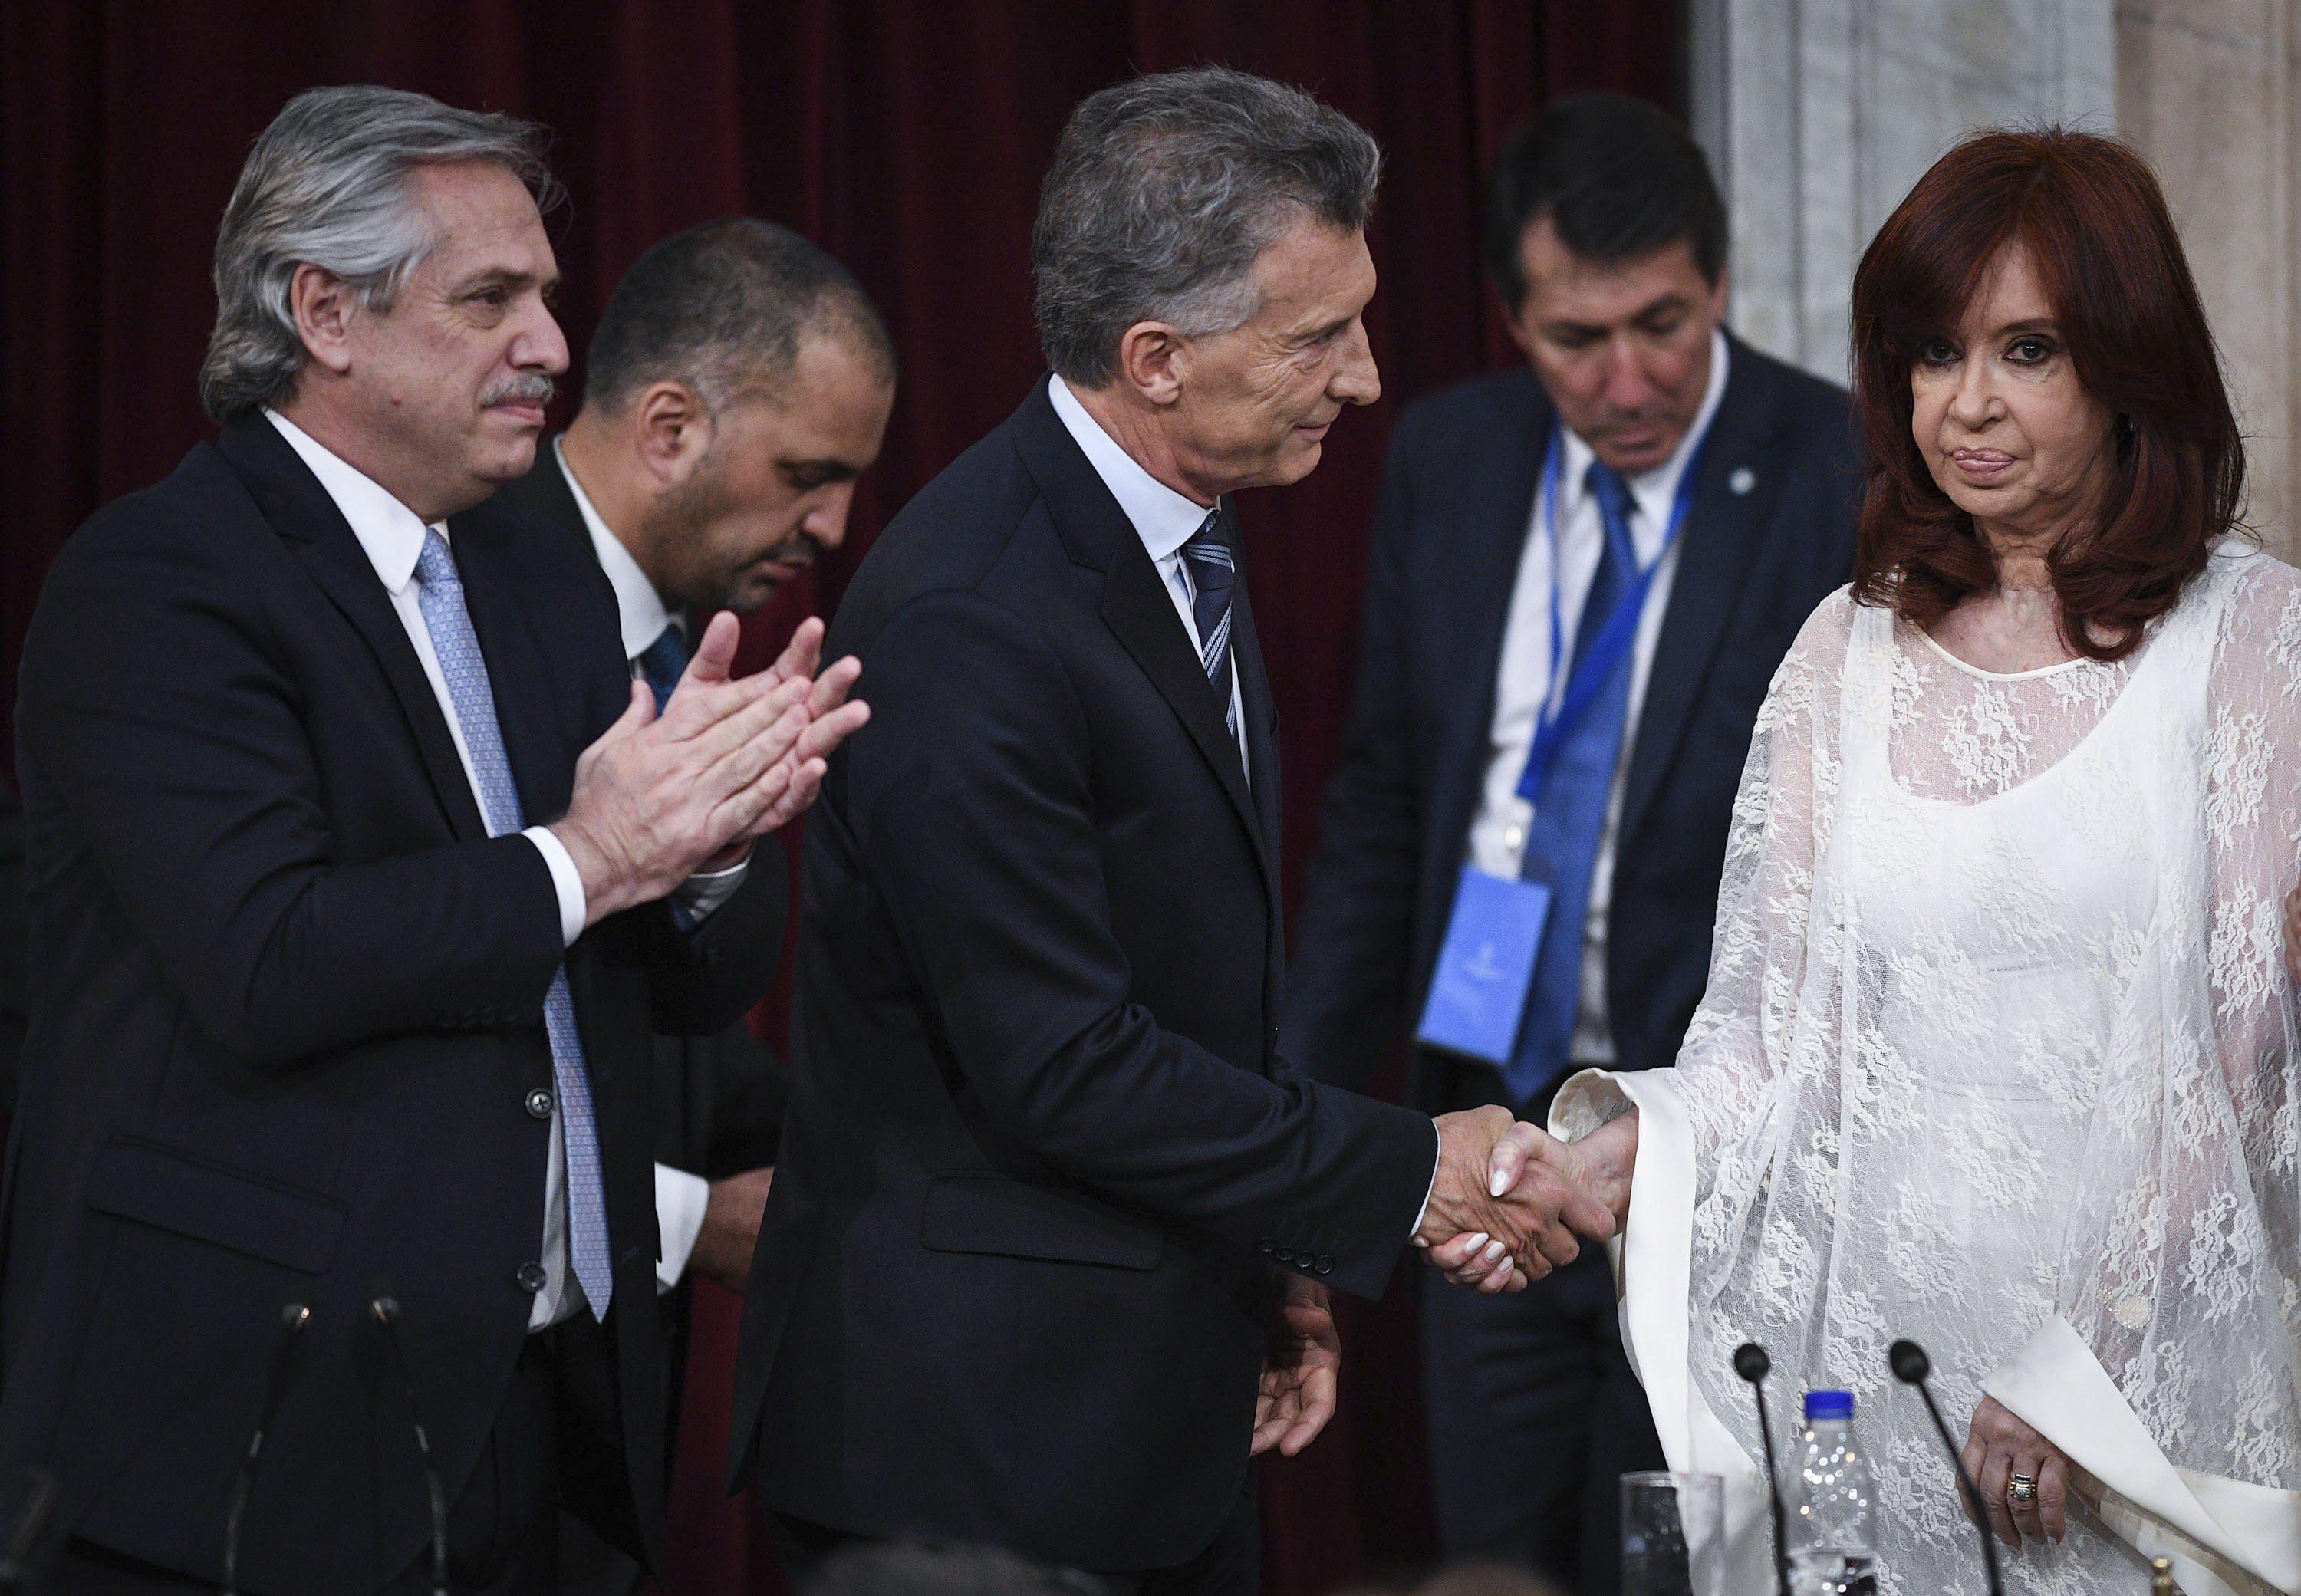 La flamante vicepresidenta Cristina Kirchner y el presidente saliente, Mauricio Macri se saludaron de manera fría en el Congreso Nacional de Argentina, donde se celebró la ceremonia de traspaso de mando a Alberto Fernández. Foto: AFP